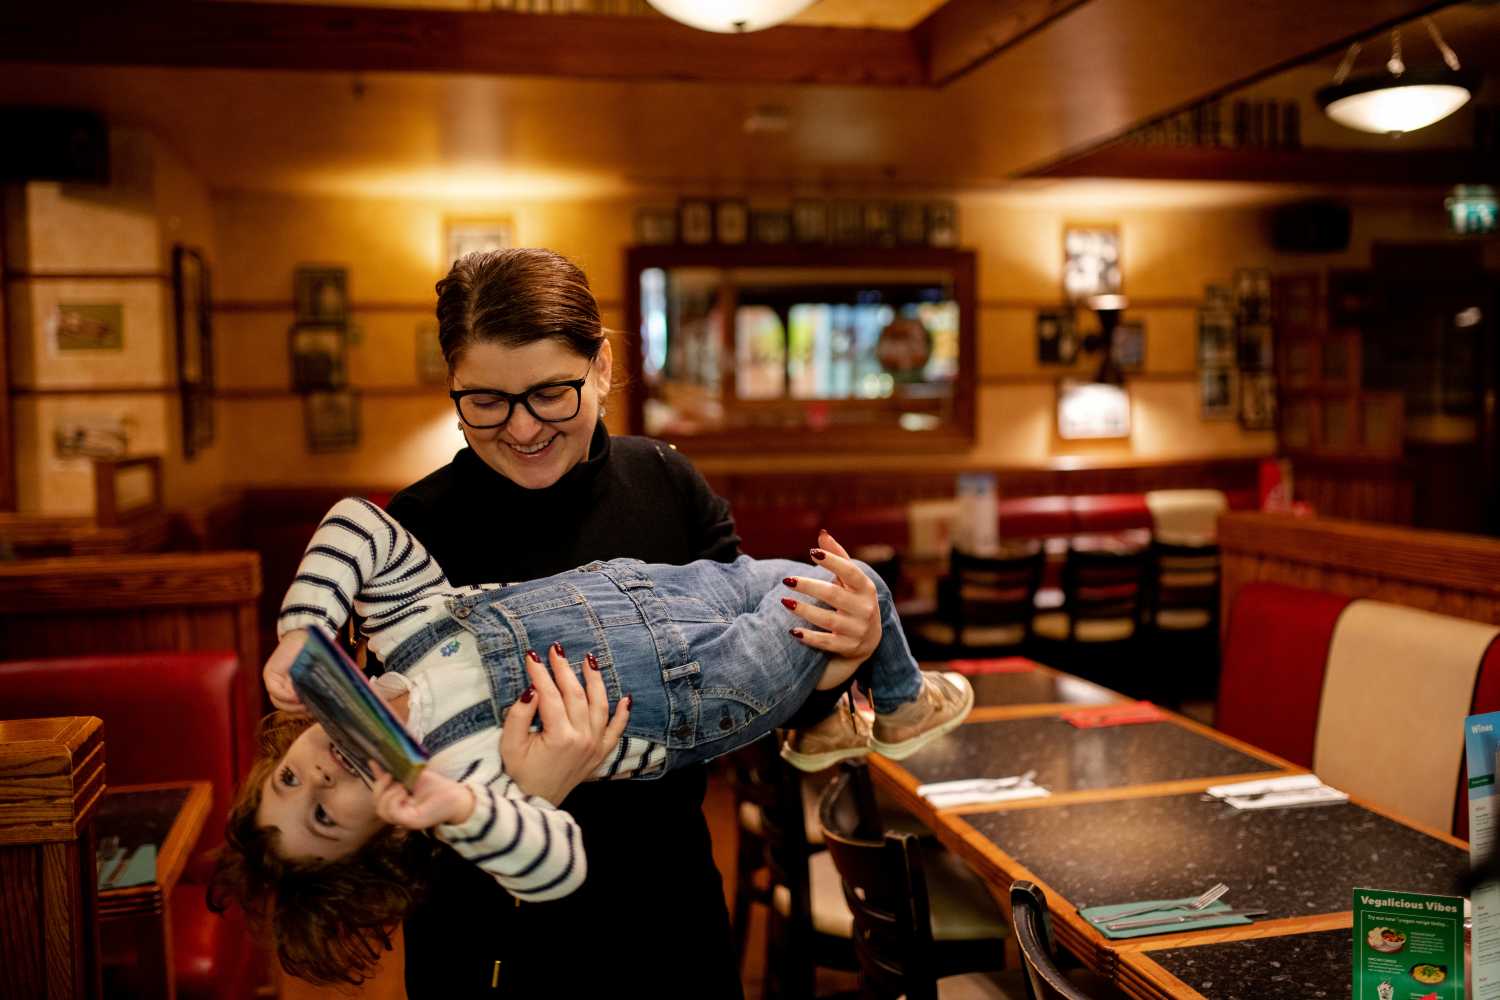 La hermana de Adi, Nicoleta, con sus sobrina en brazos en el restaurante donde han comido